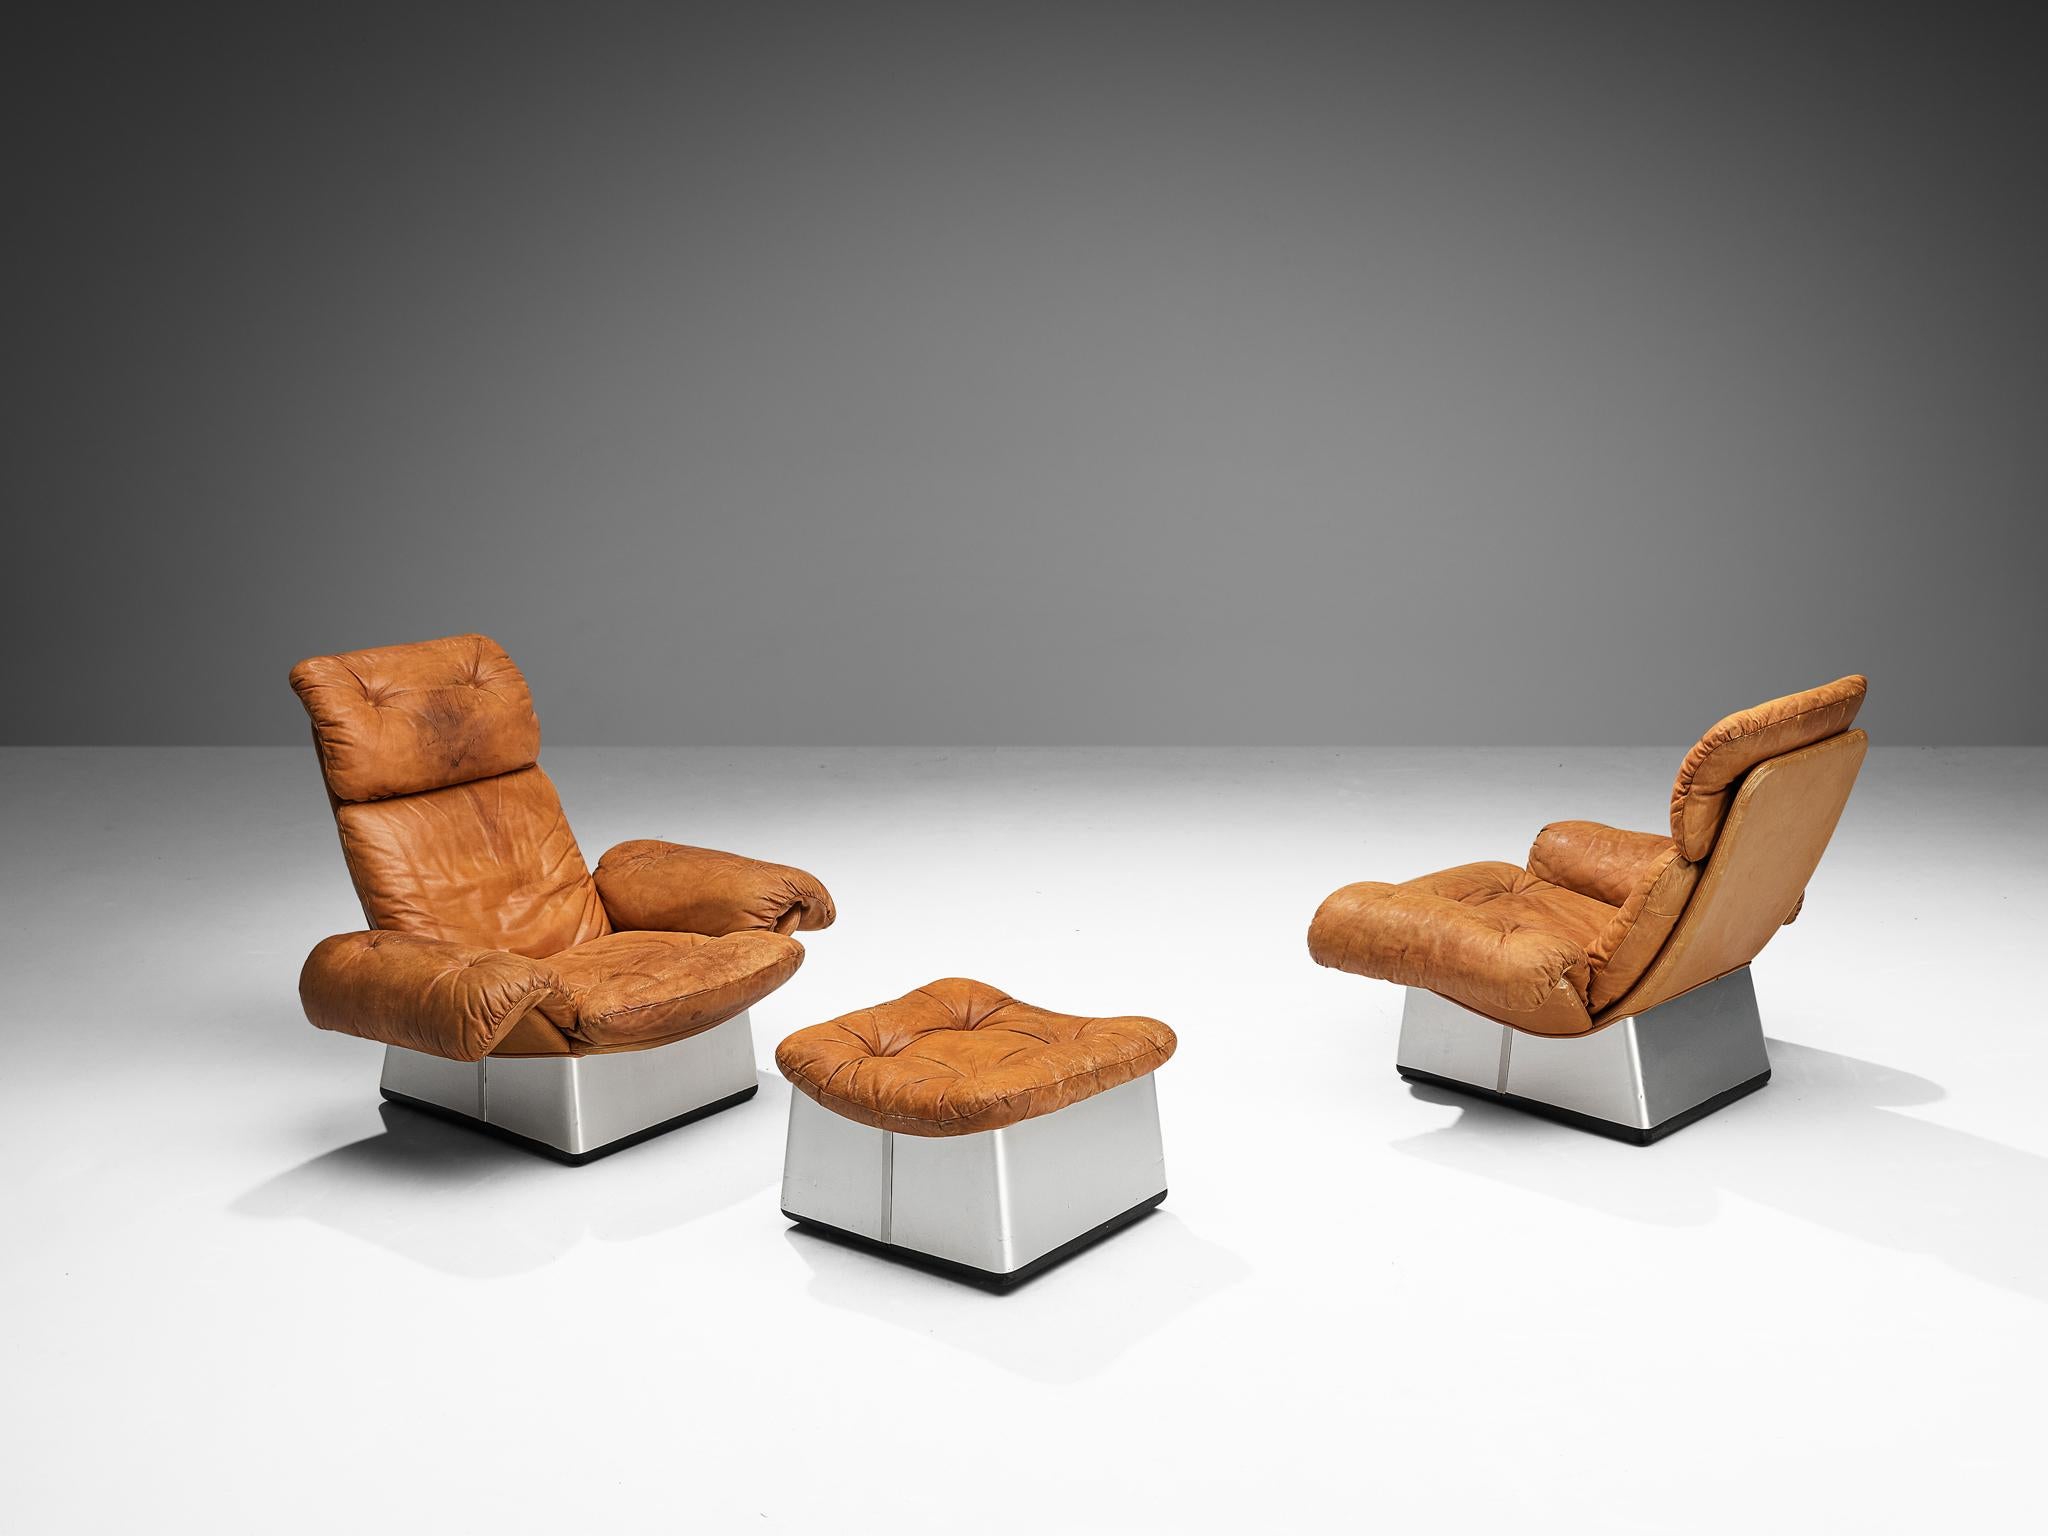 Ensemble de salon composé de deux chaises et d'un ottoman, aluminium, cuir, Italie, années 1970

Paire de chaises longues et ottomanes fabriquées en Italie dans les années 1970. Ces chaises représentent fortement l'essence du Design/One des années